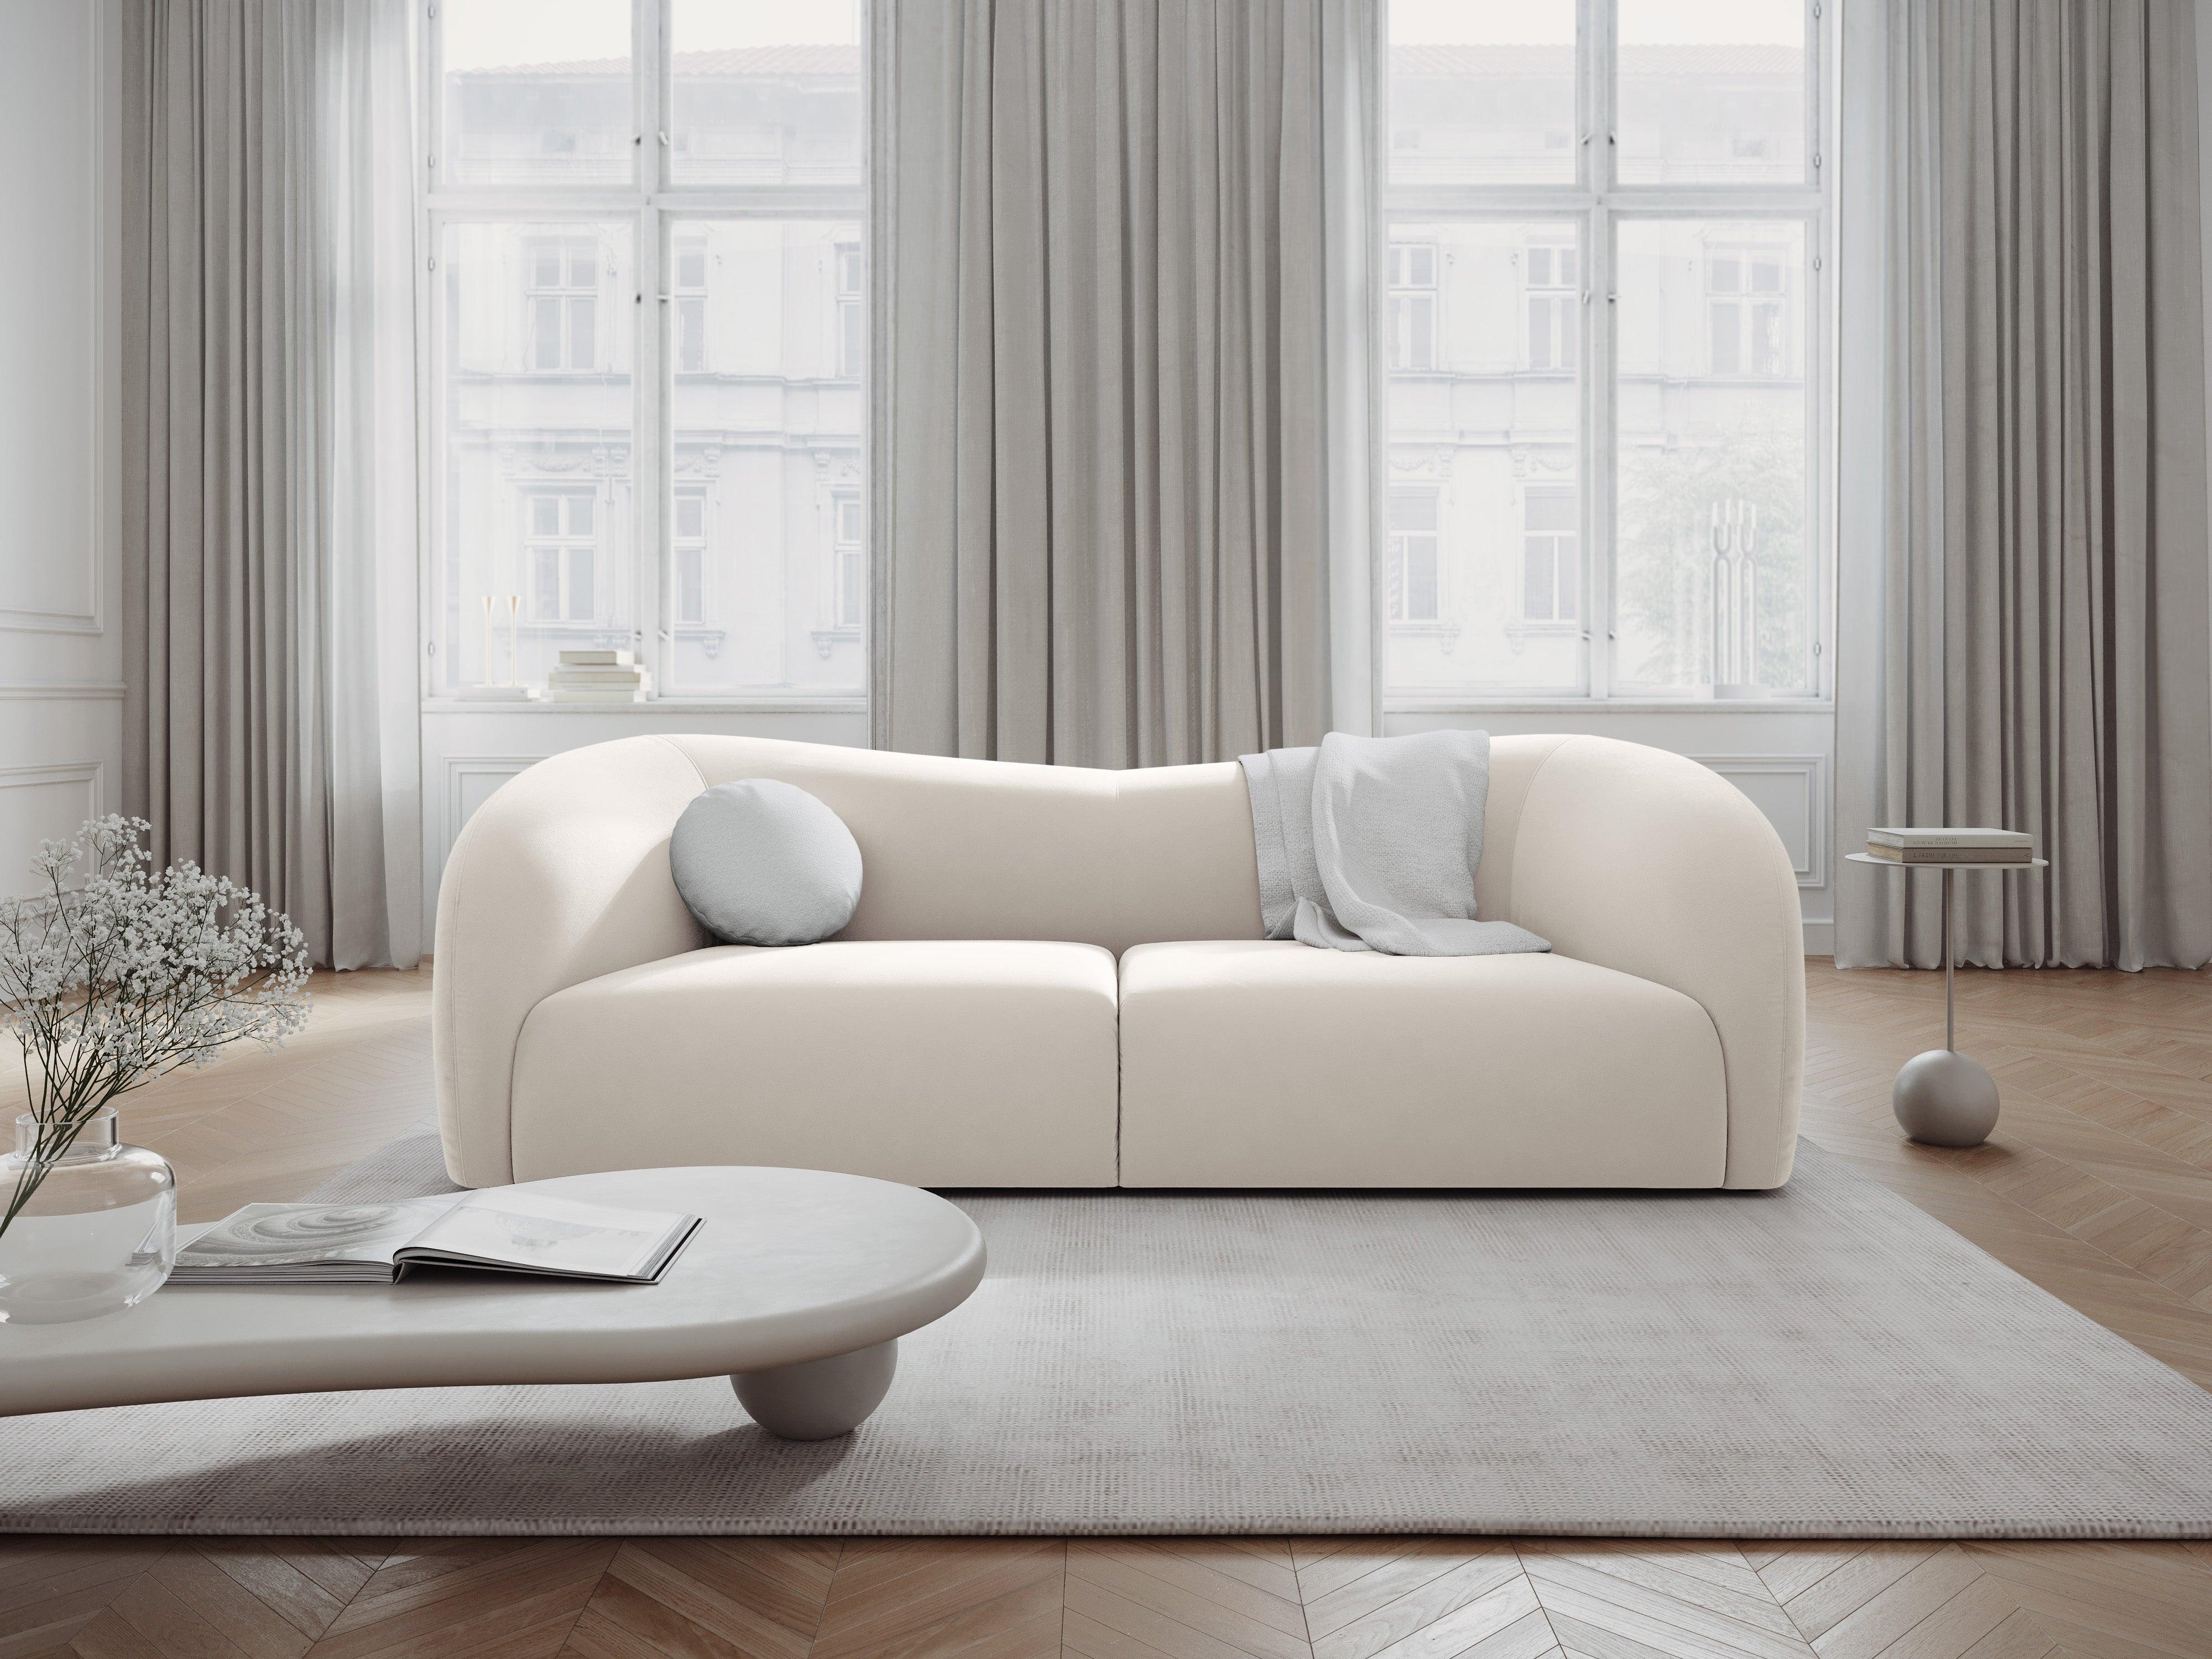 Velvet Sofa, "Santi", 3 Seats, Light Beige, 237x90x75
Made in Europe Interieurs 86    Eye on Design